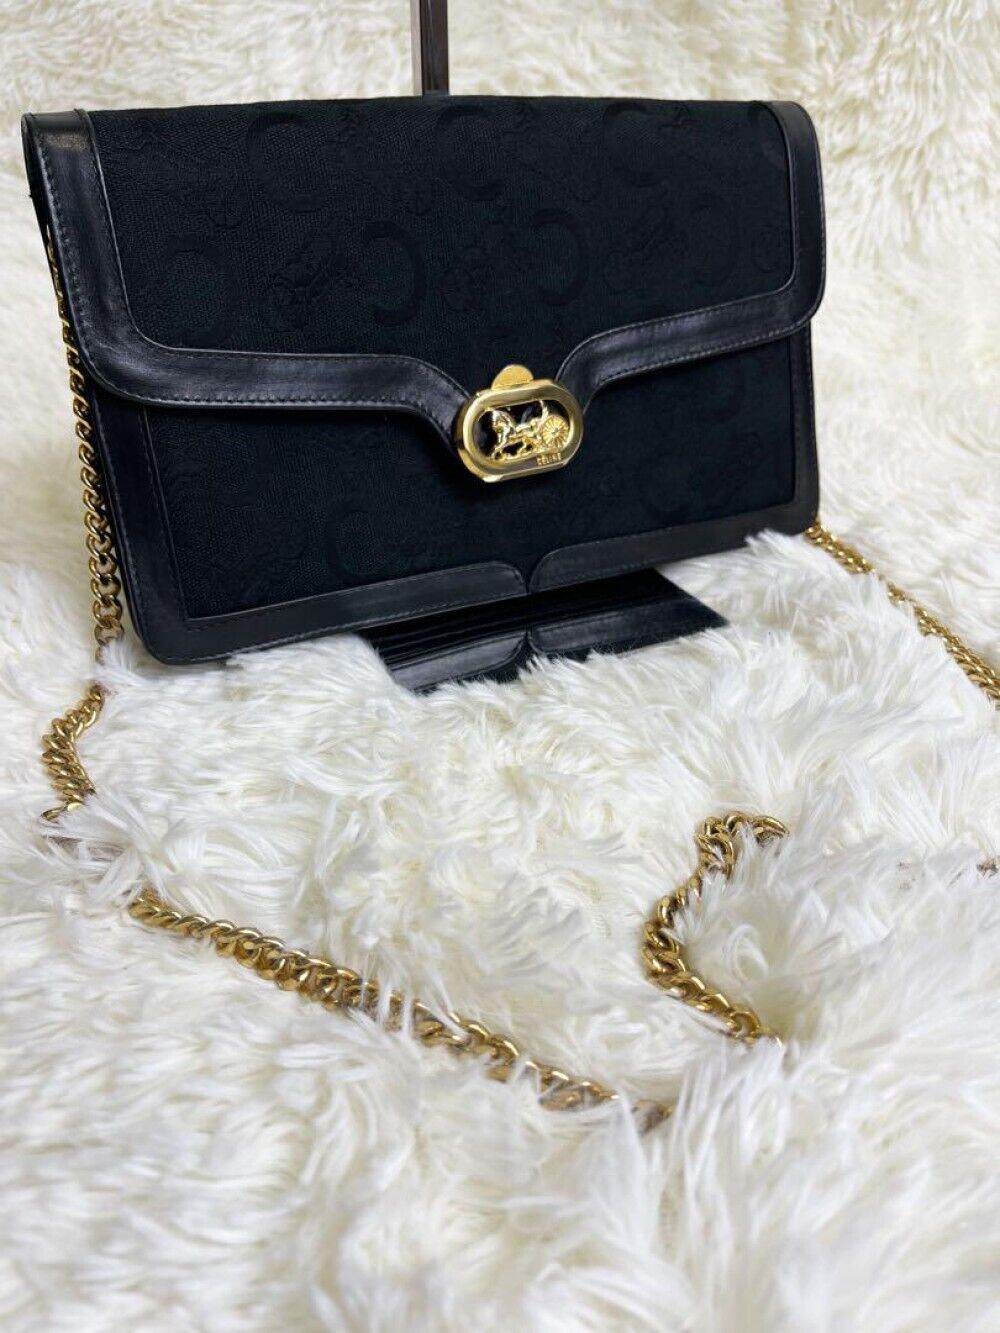 Celine Shoulder Bag Vintage Carriage Hardware Macadam Gold Hardware Authentic